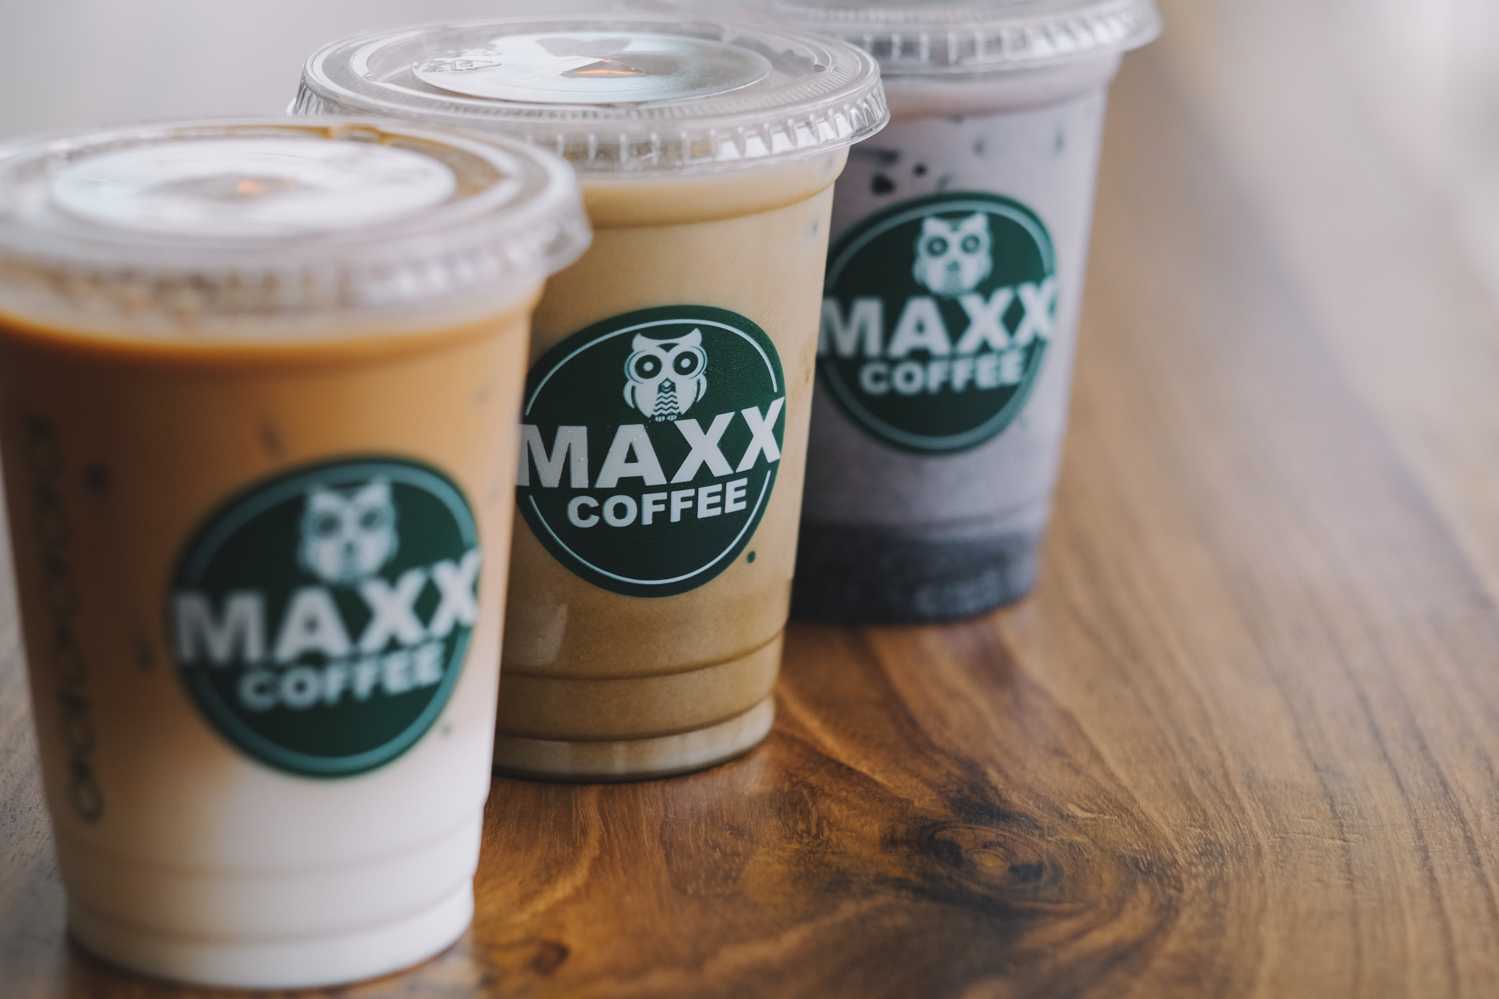 Hanya ada dua gerai MAXX Coffee yang berada di Serpong